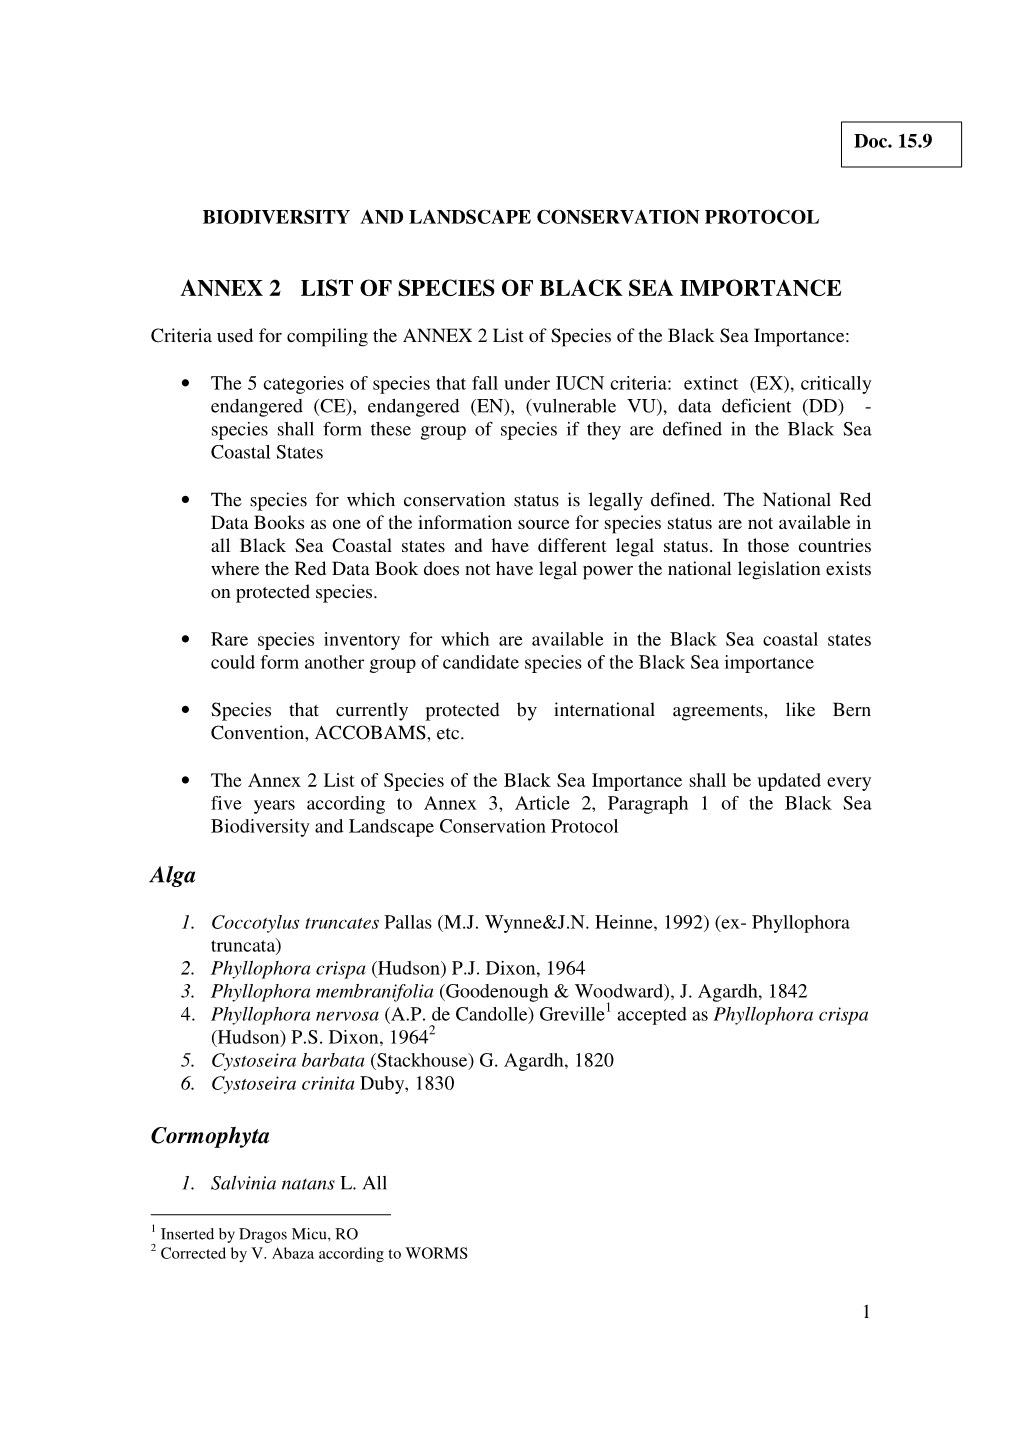 ANNEX 2 LIST of SPECIES of BLACK SEA IMPORTANCE Alga